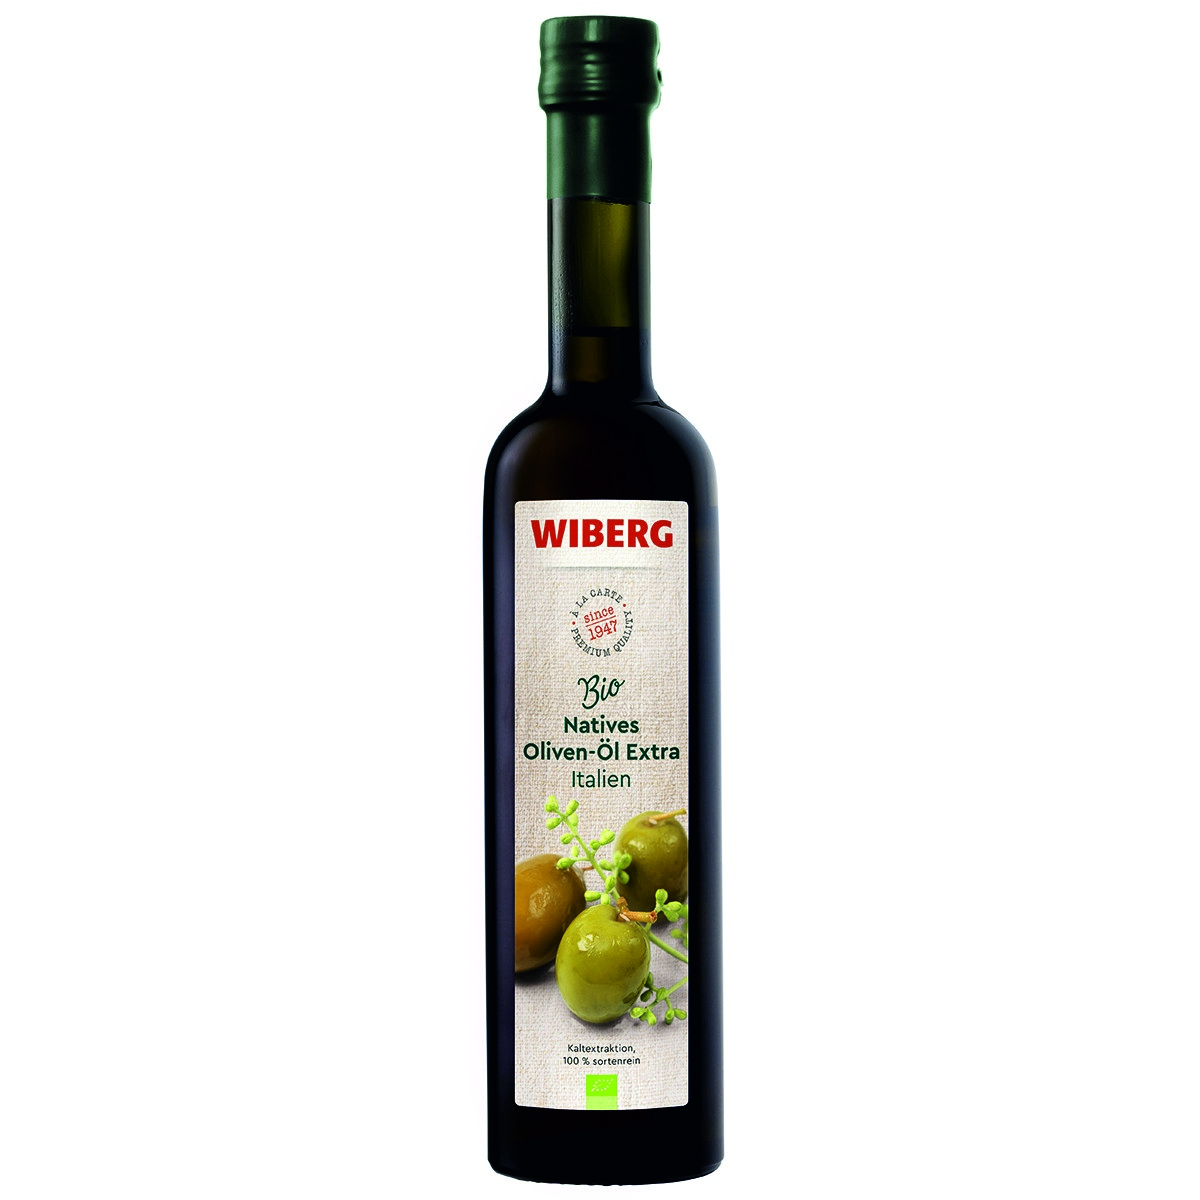 WIBERG BIO Natives Oliven-Öl Extra Italien